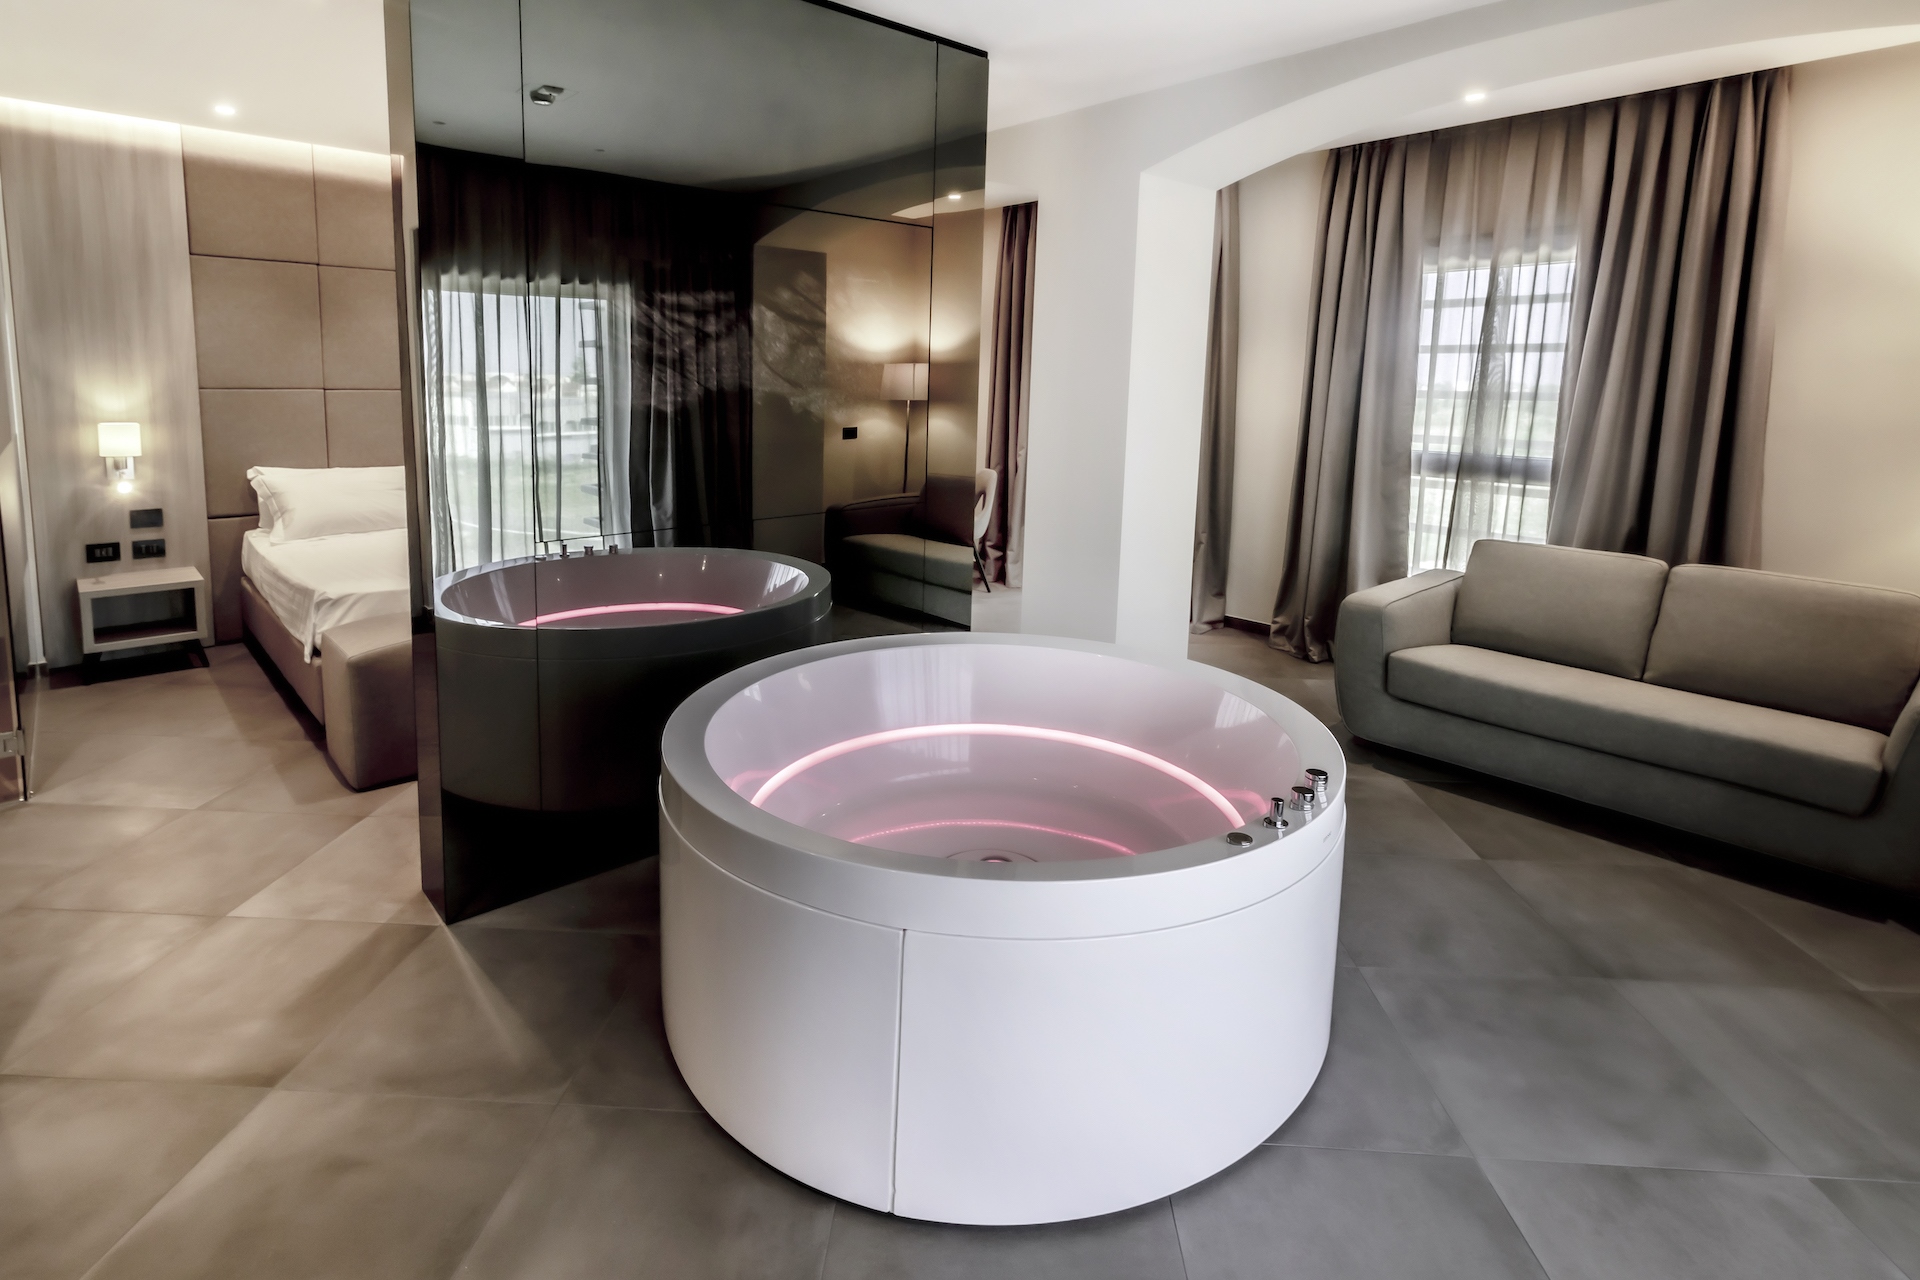 vasca idromassaggio arredo di lusso contract per Hotel Salina di Taranto realizzato dal Gruppo Rodi